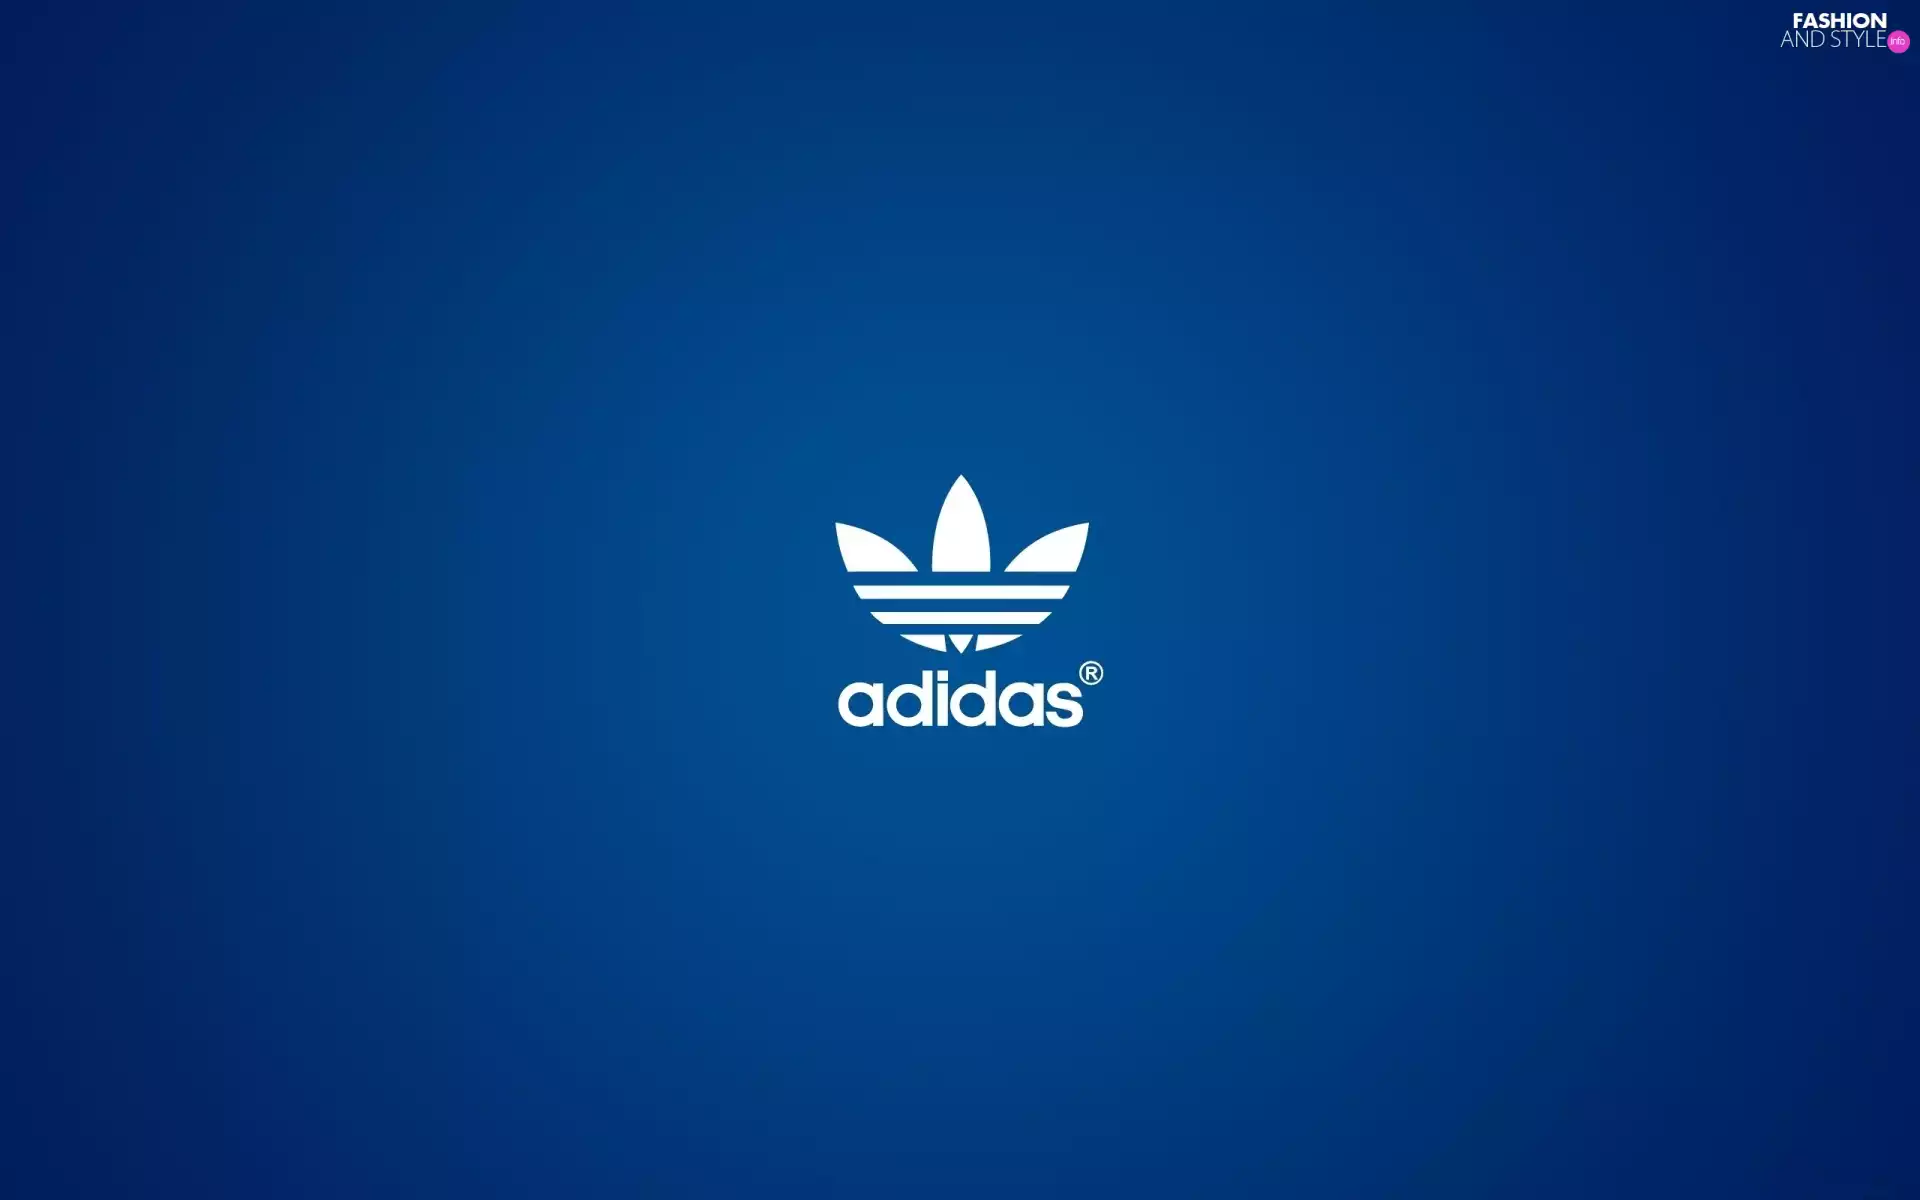 logo, Blue, background, adidas